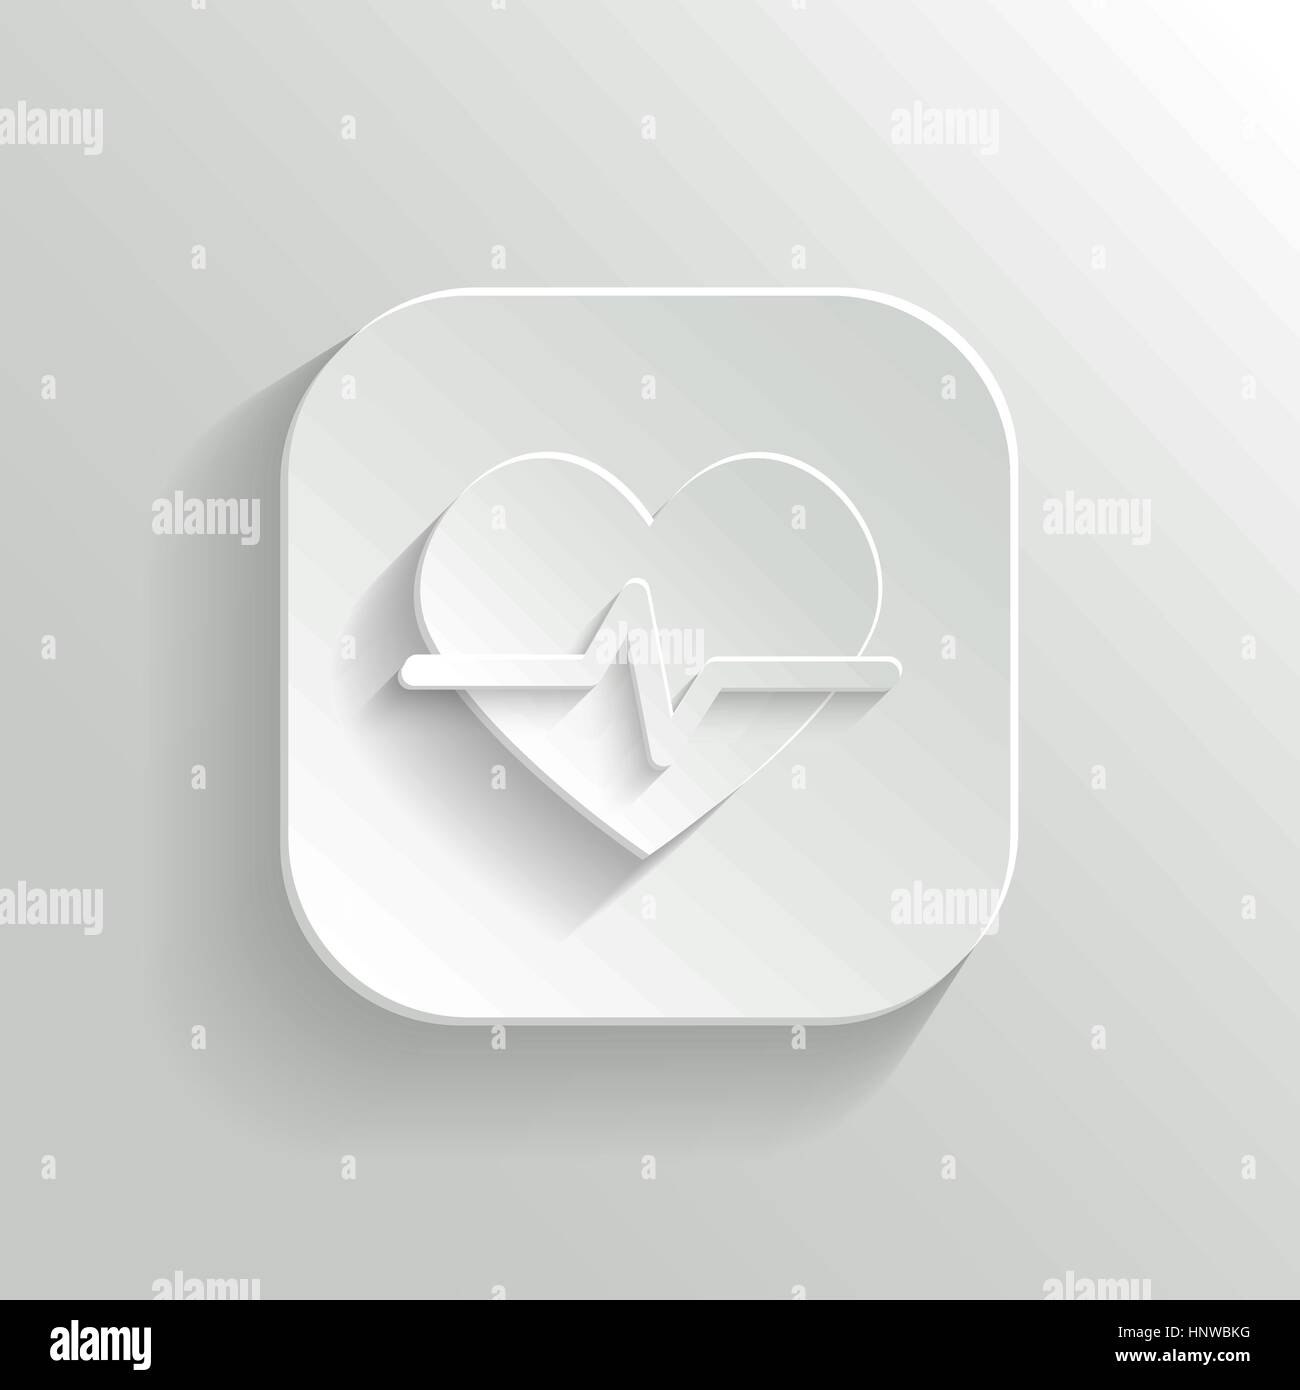 Kardiologie-Symbol - Taste "Vektor weiße app" mit Schatten Stock Vektor